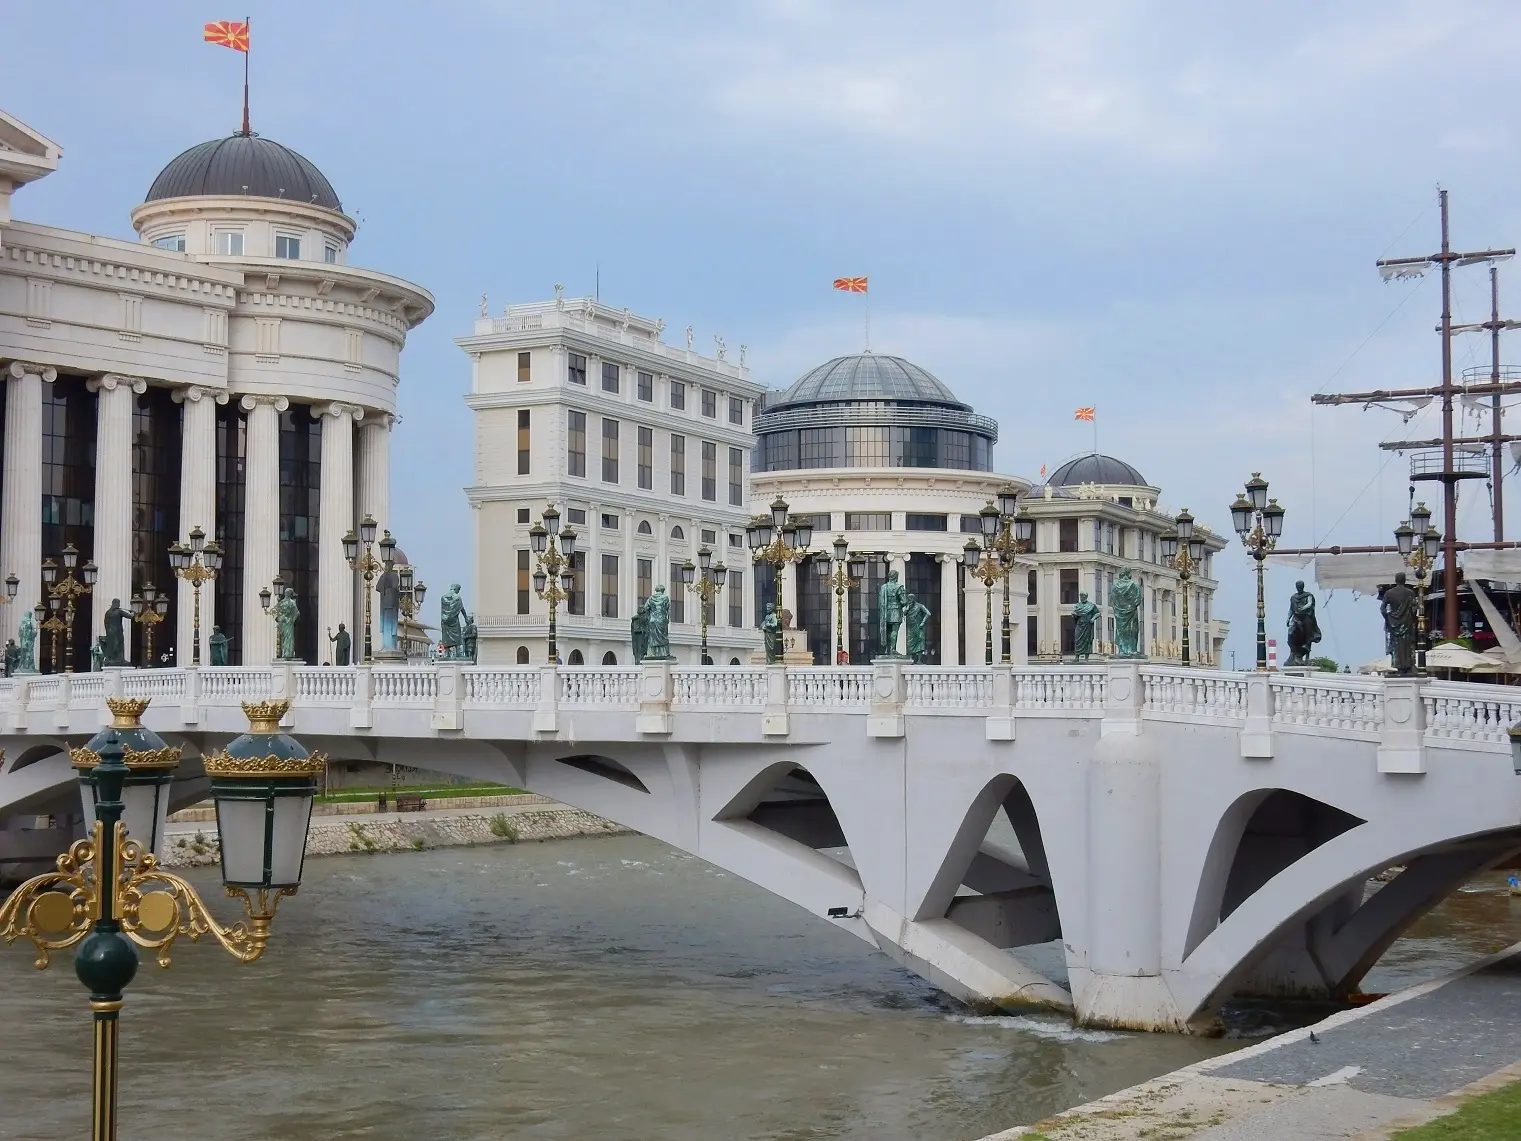 Skopje architecture bridge boat